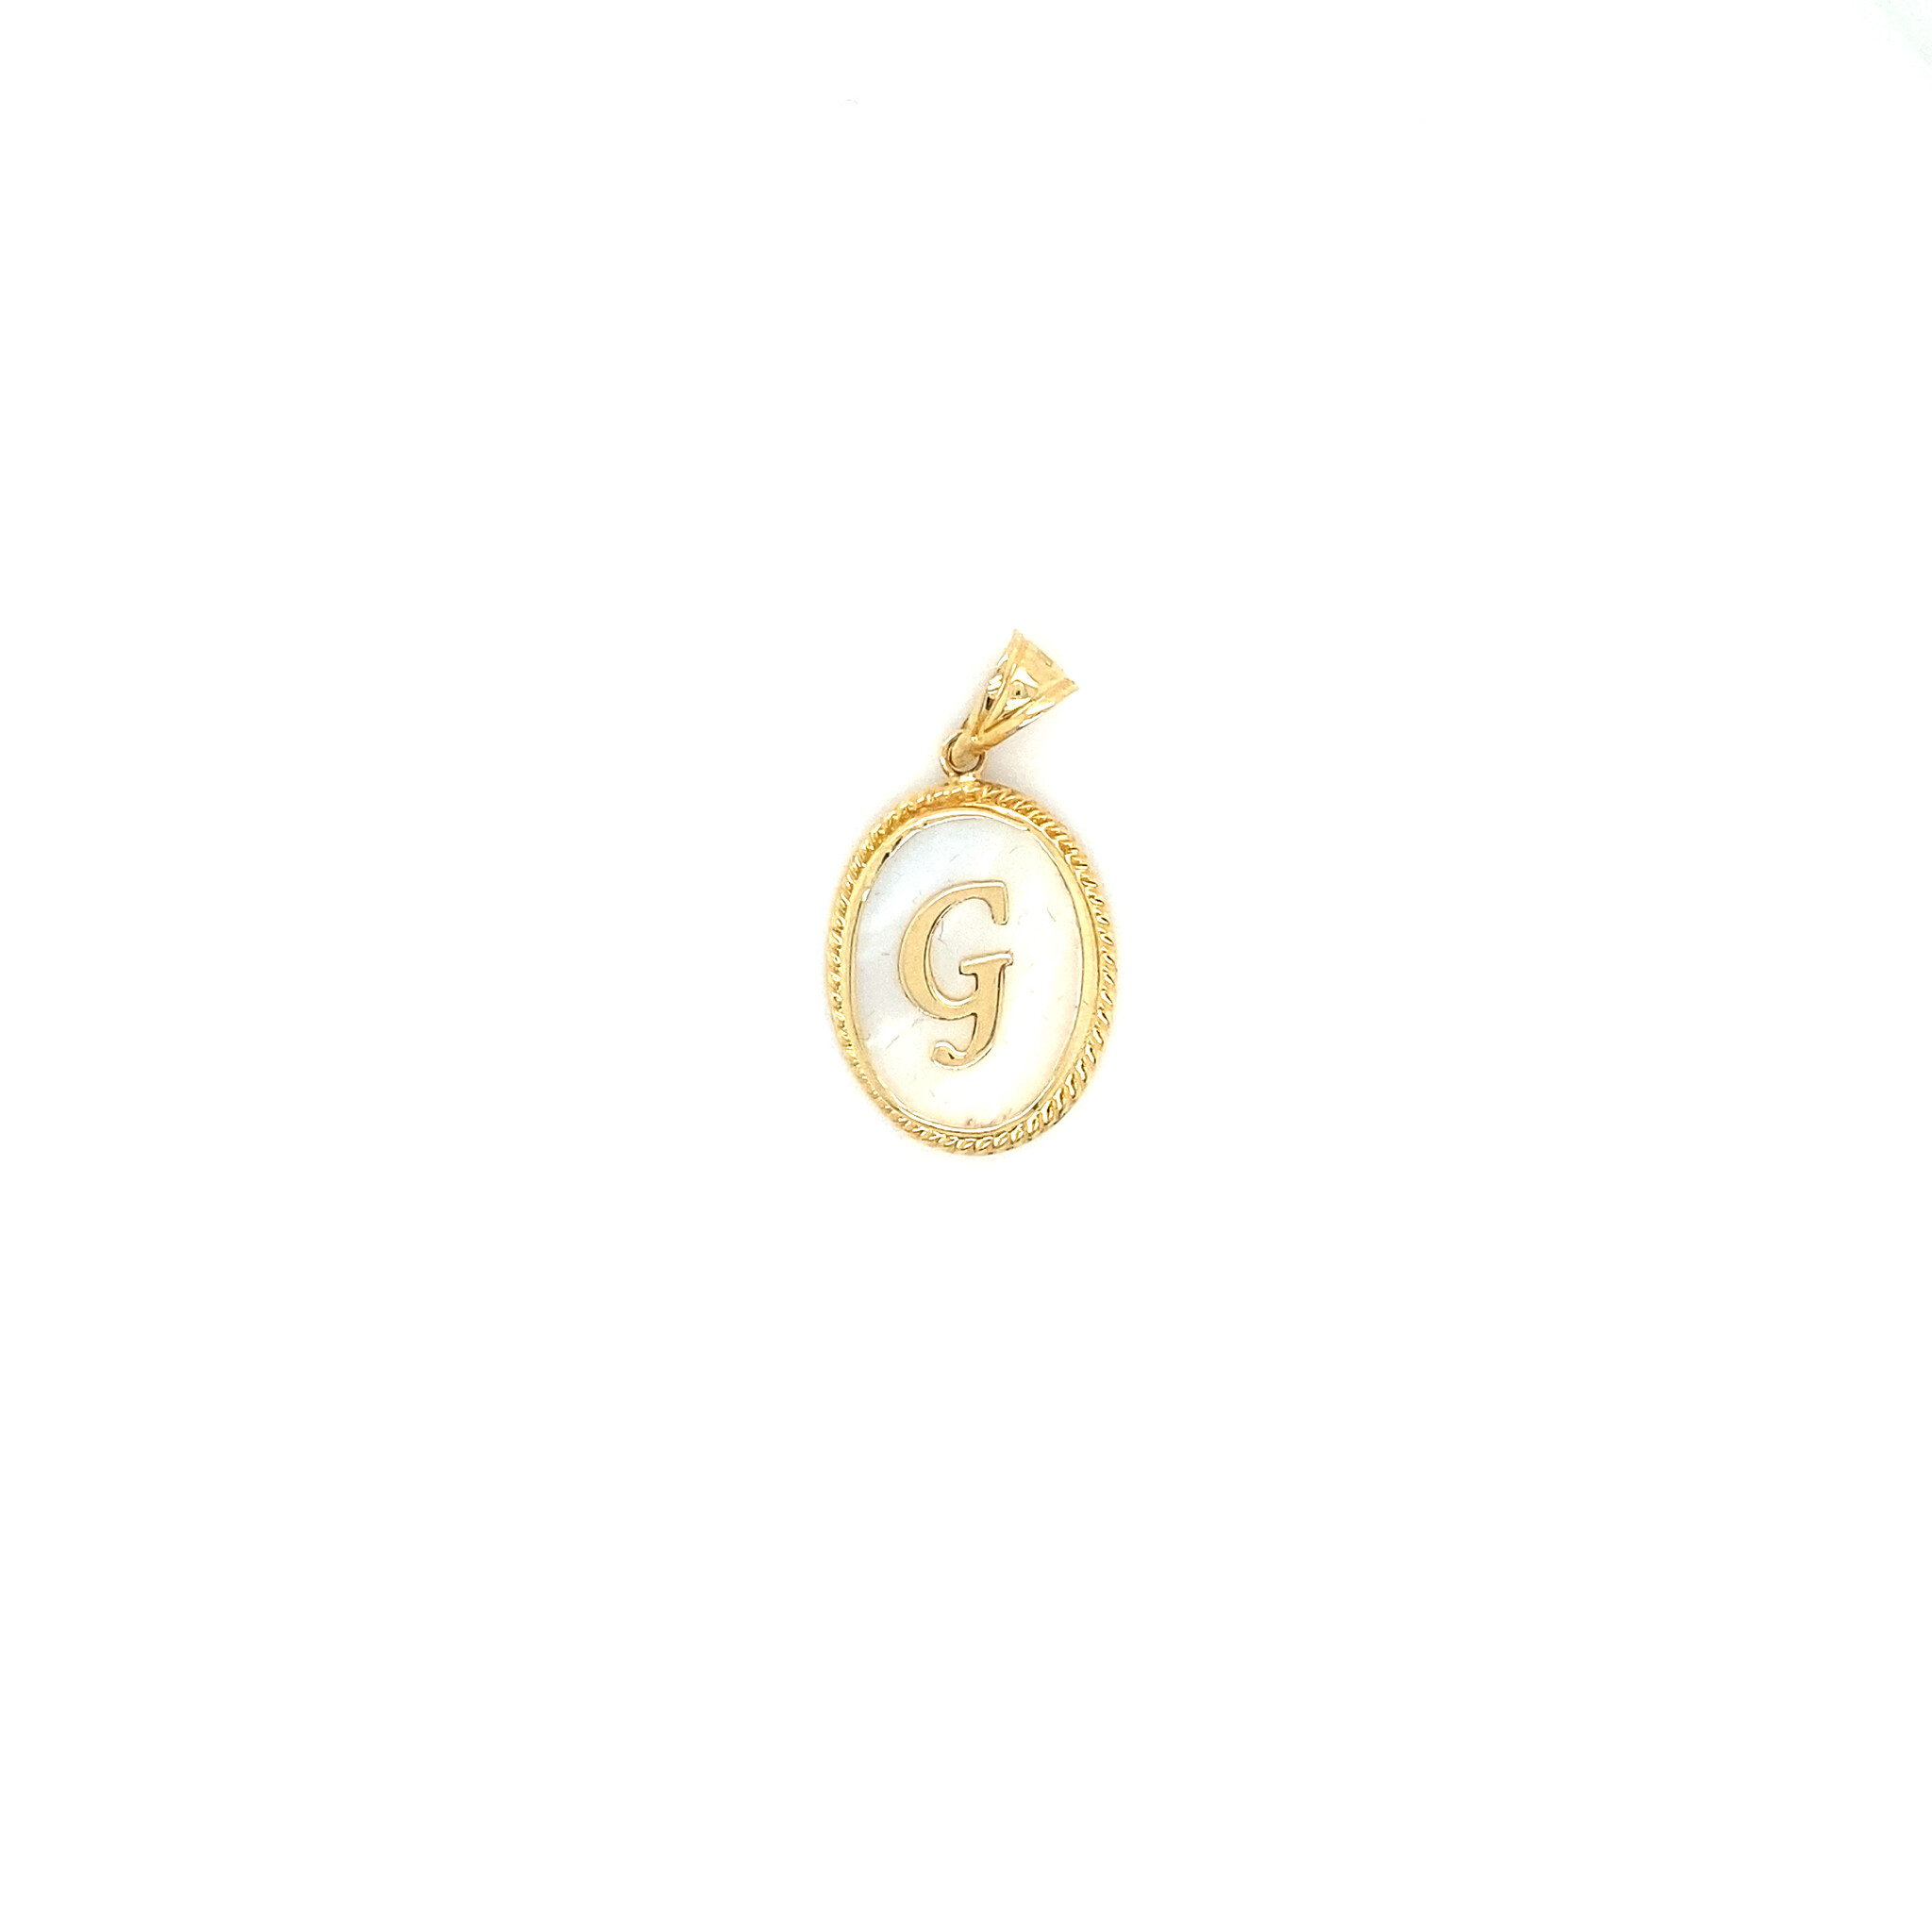 Hanger letter G op parelmoer ondergrond met gouden omlijning-1